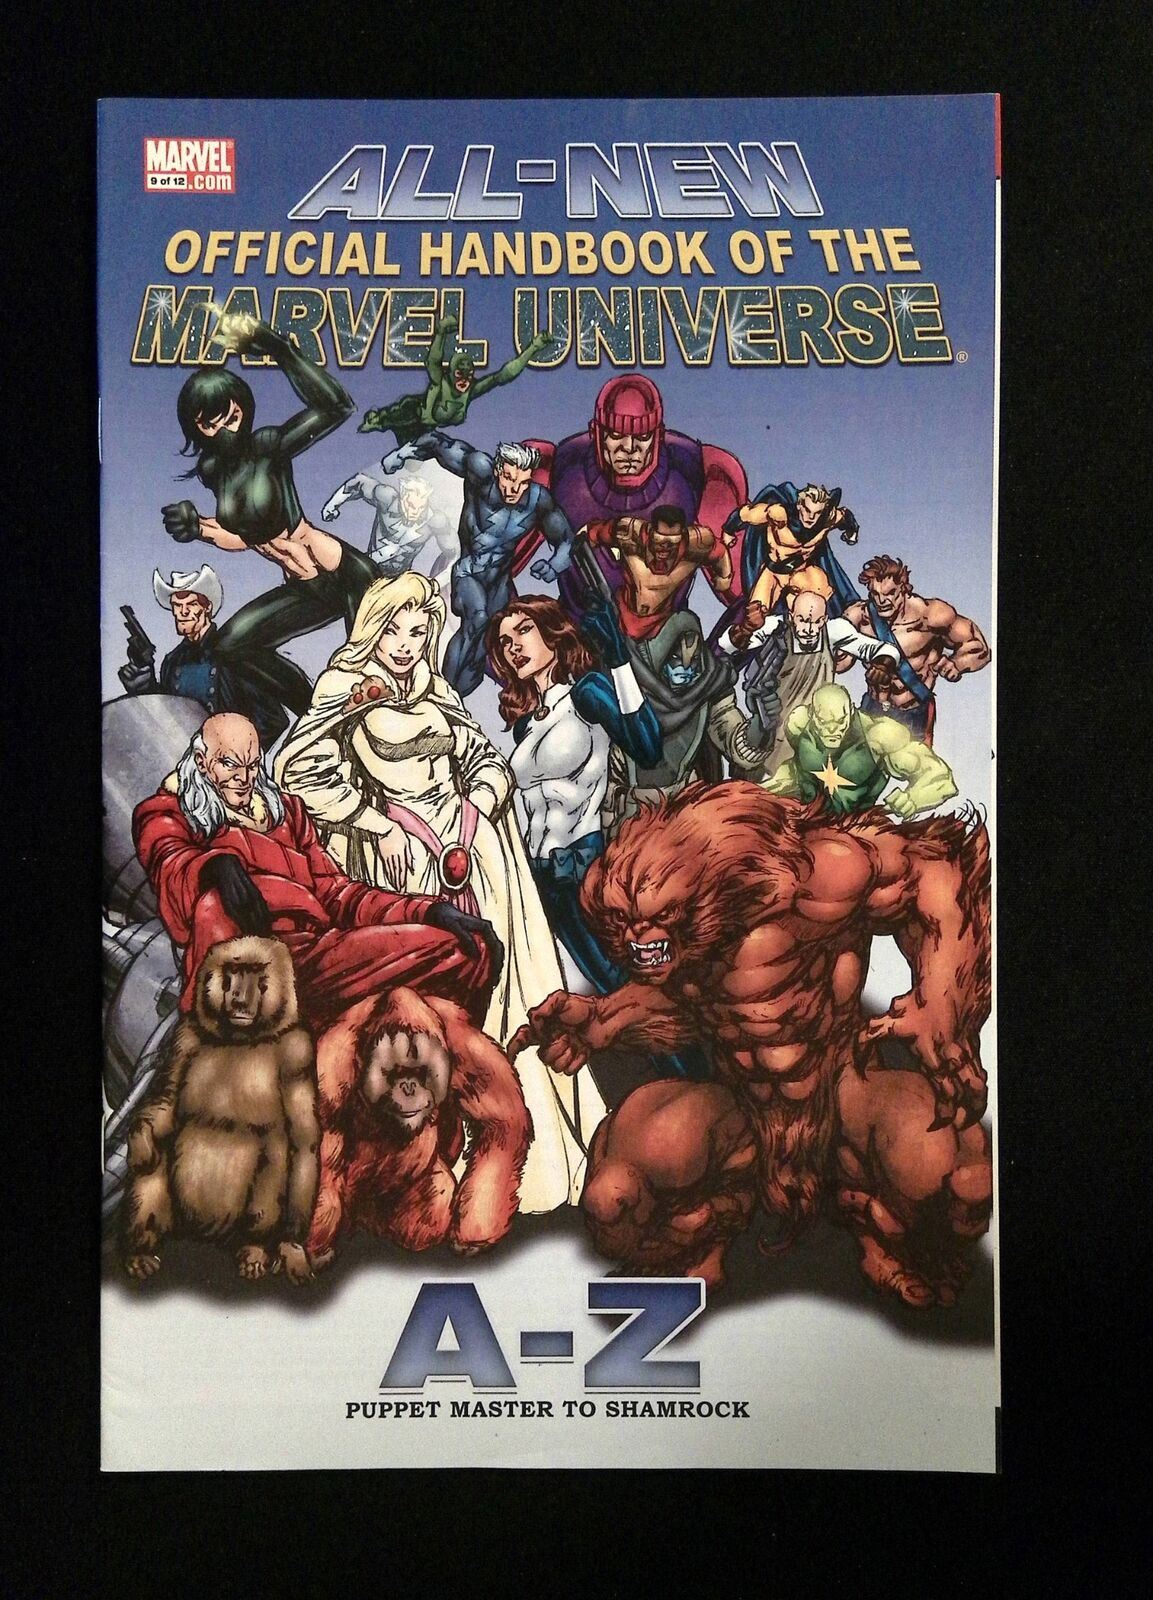 All New Official Handbook Marvel Universe A-Z #9  Marvel Comics 2006 Vf+